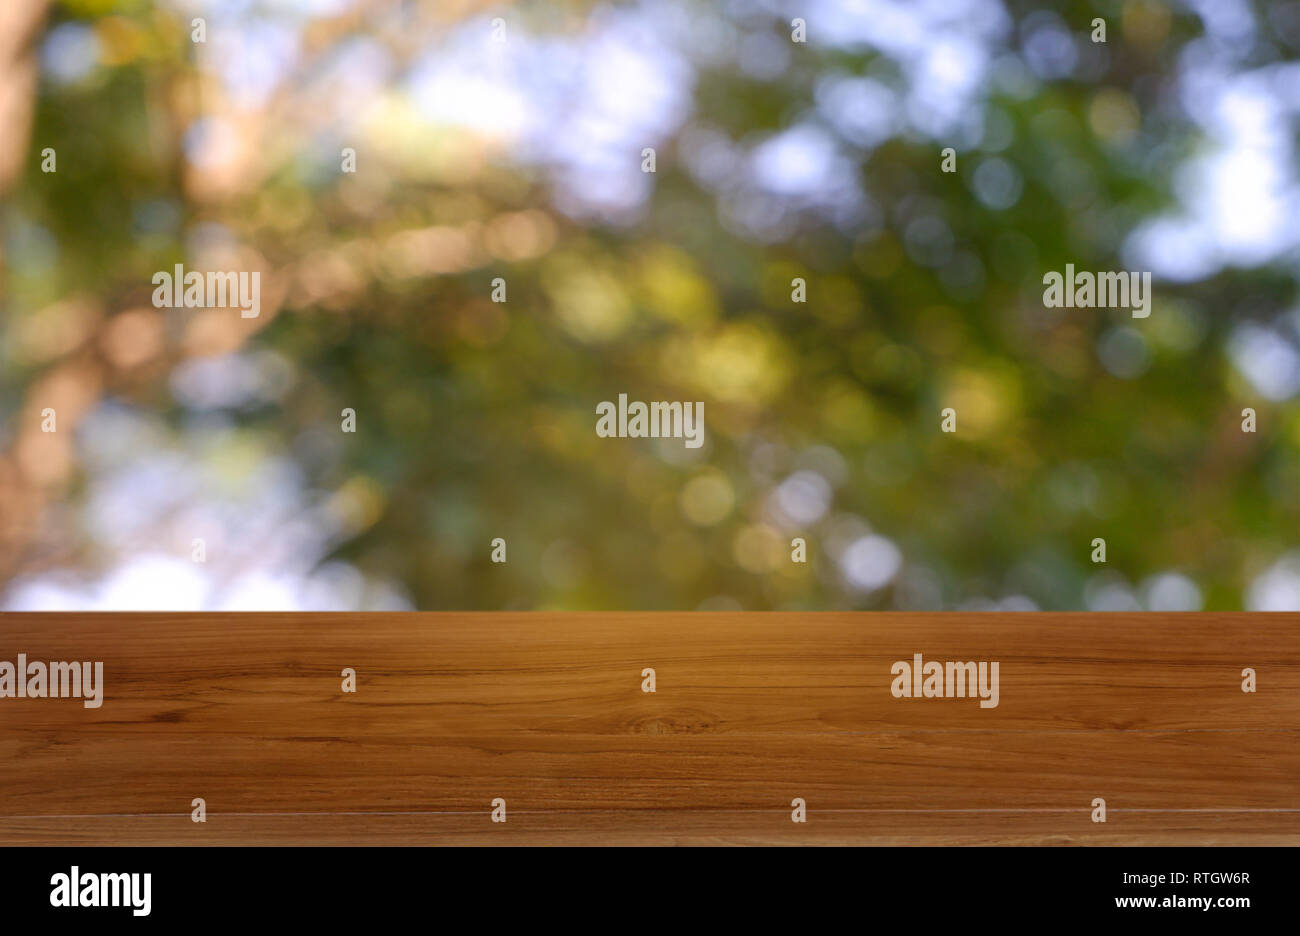 Leere Holztisch vor abstrakten verschwommen grünen Garten und Natur hellen Hintergrund. Für die Montage des Produkts angezeigt oder Design Key Visual Layout - Stockfoto